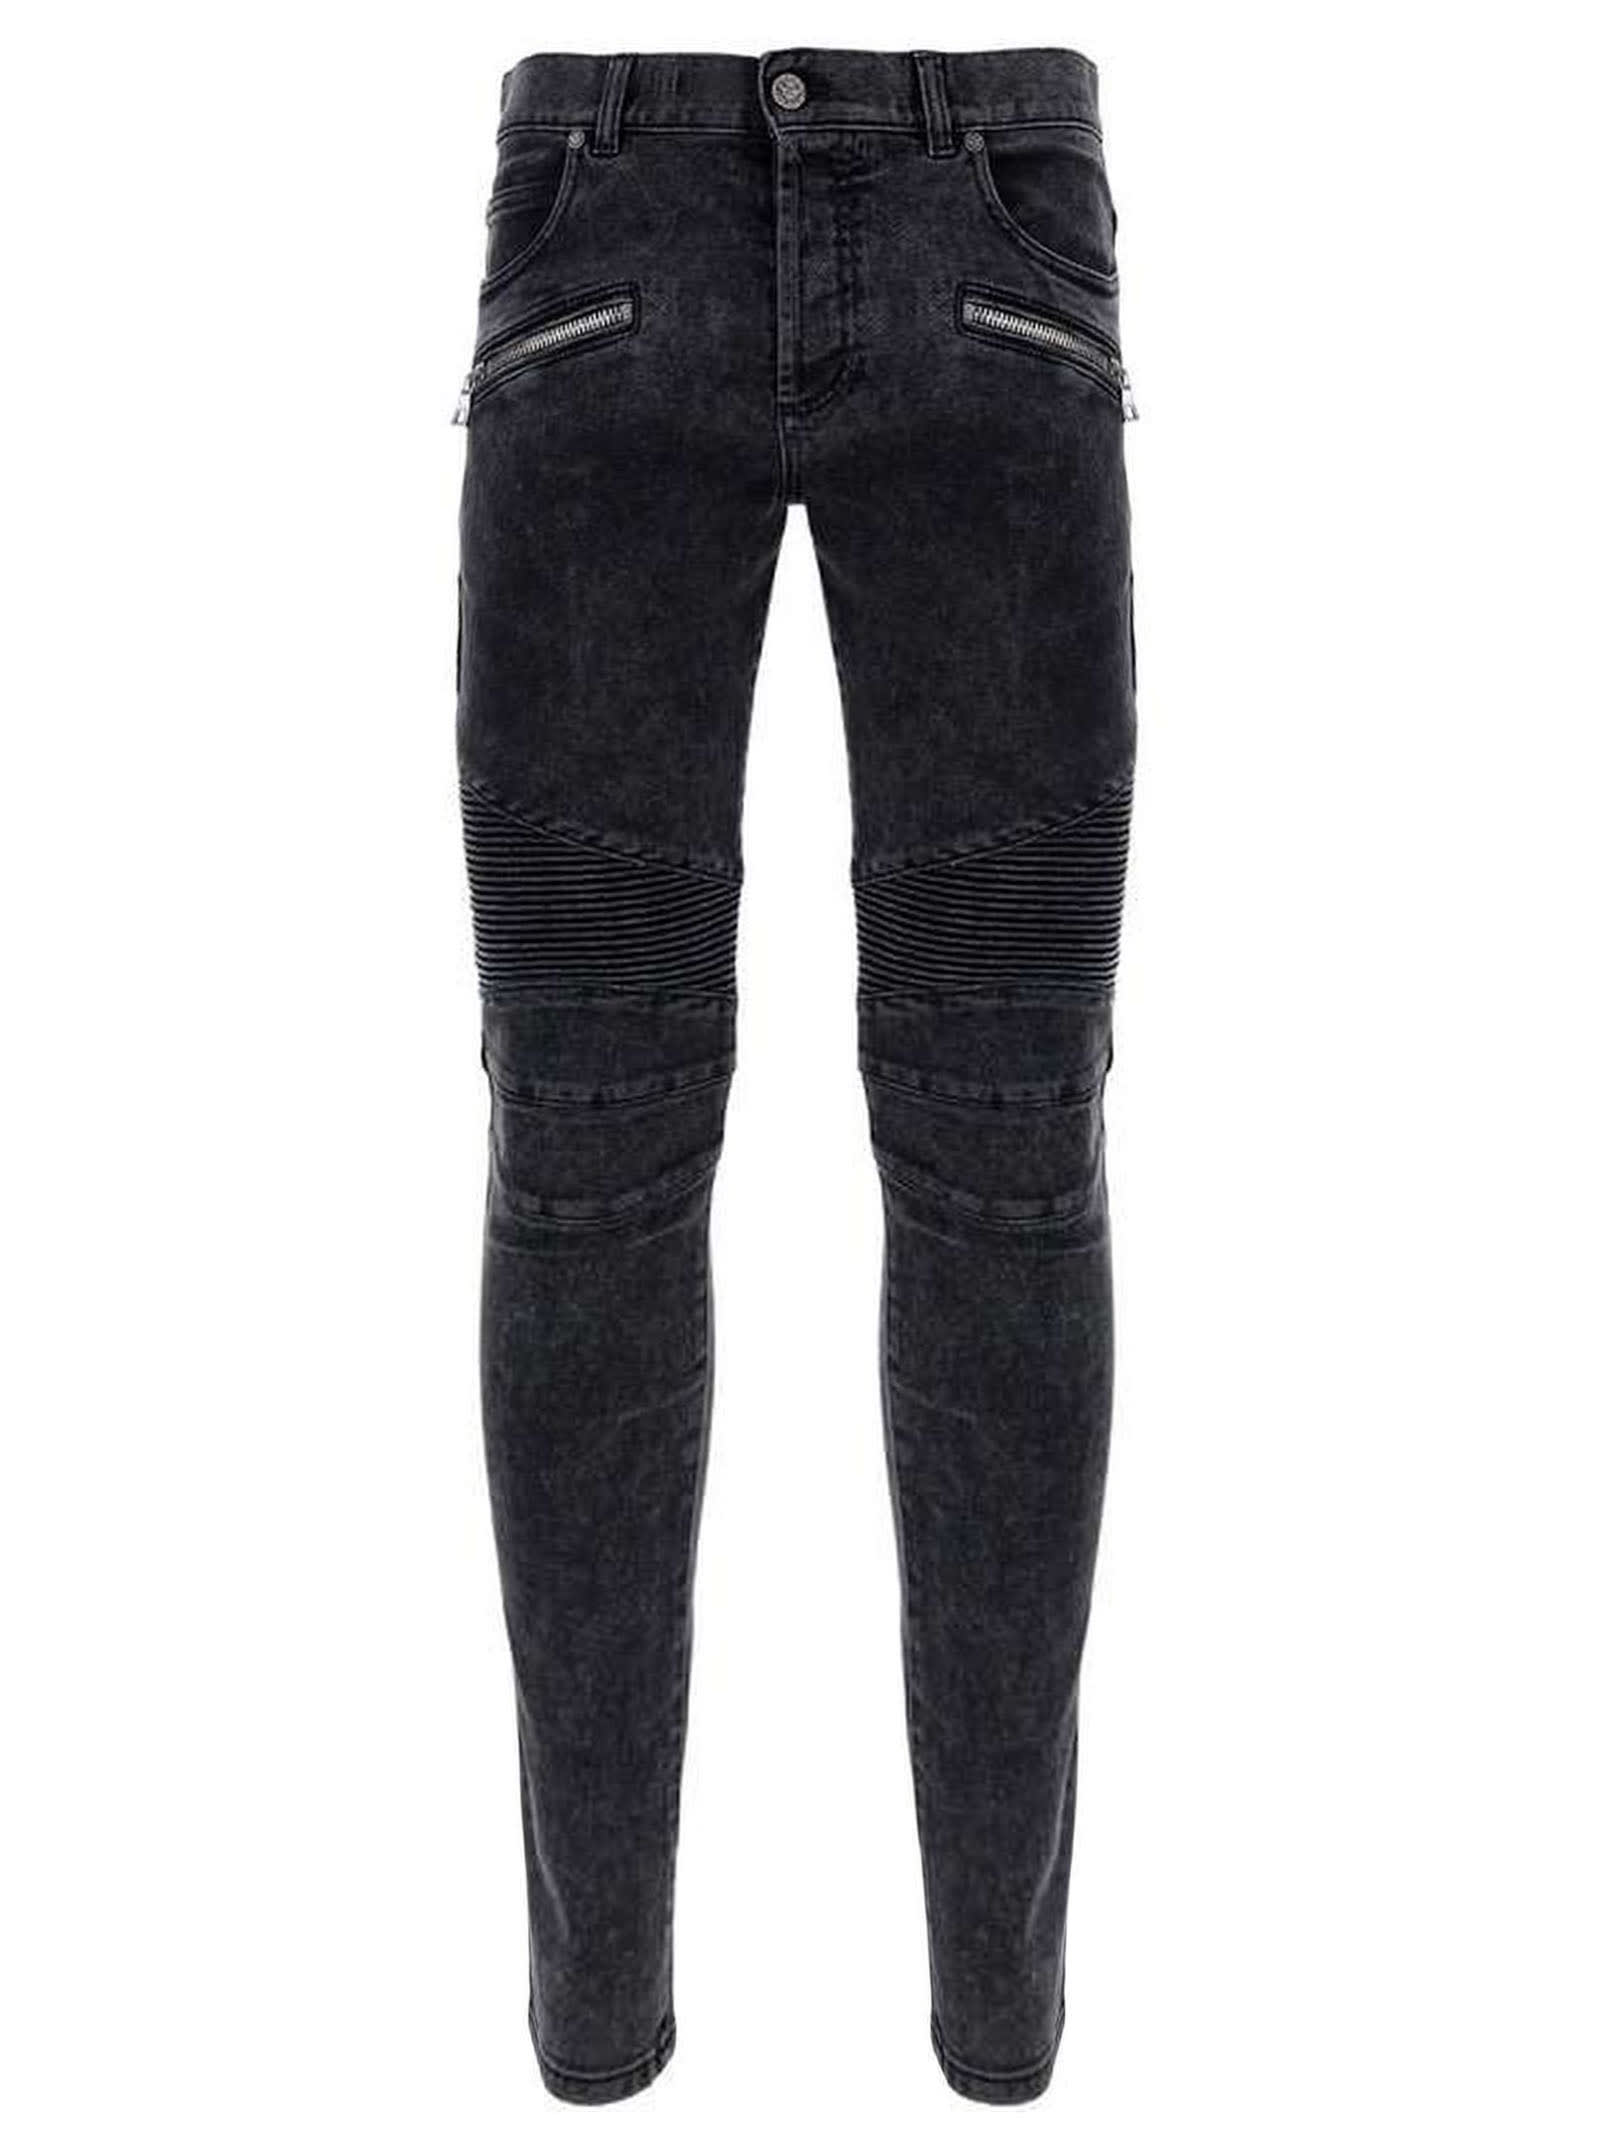 Balmain Black Cotton Biker Jeans